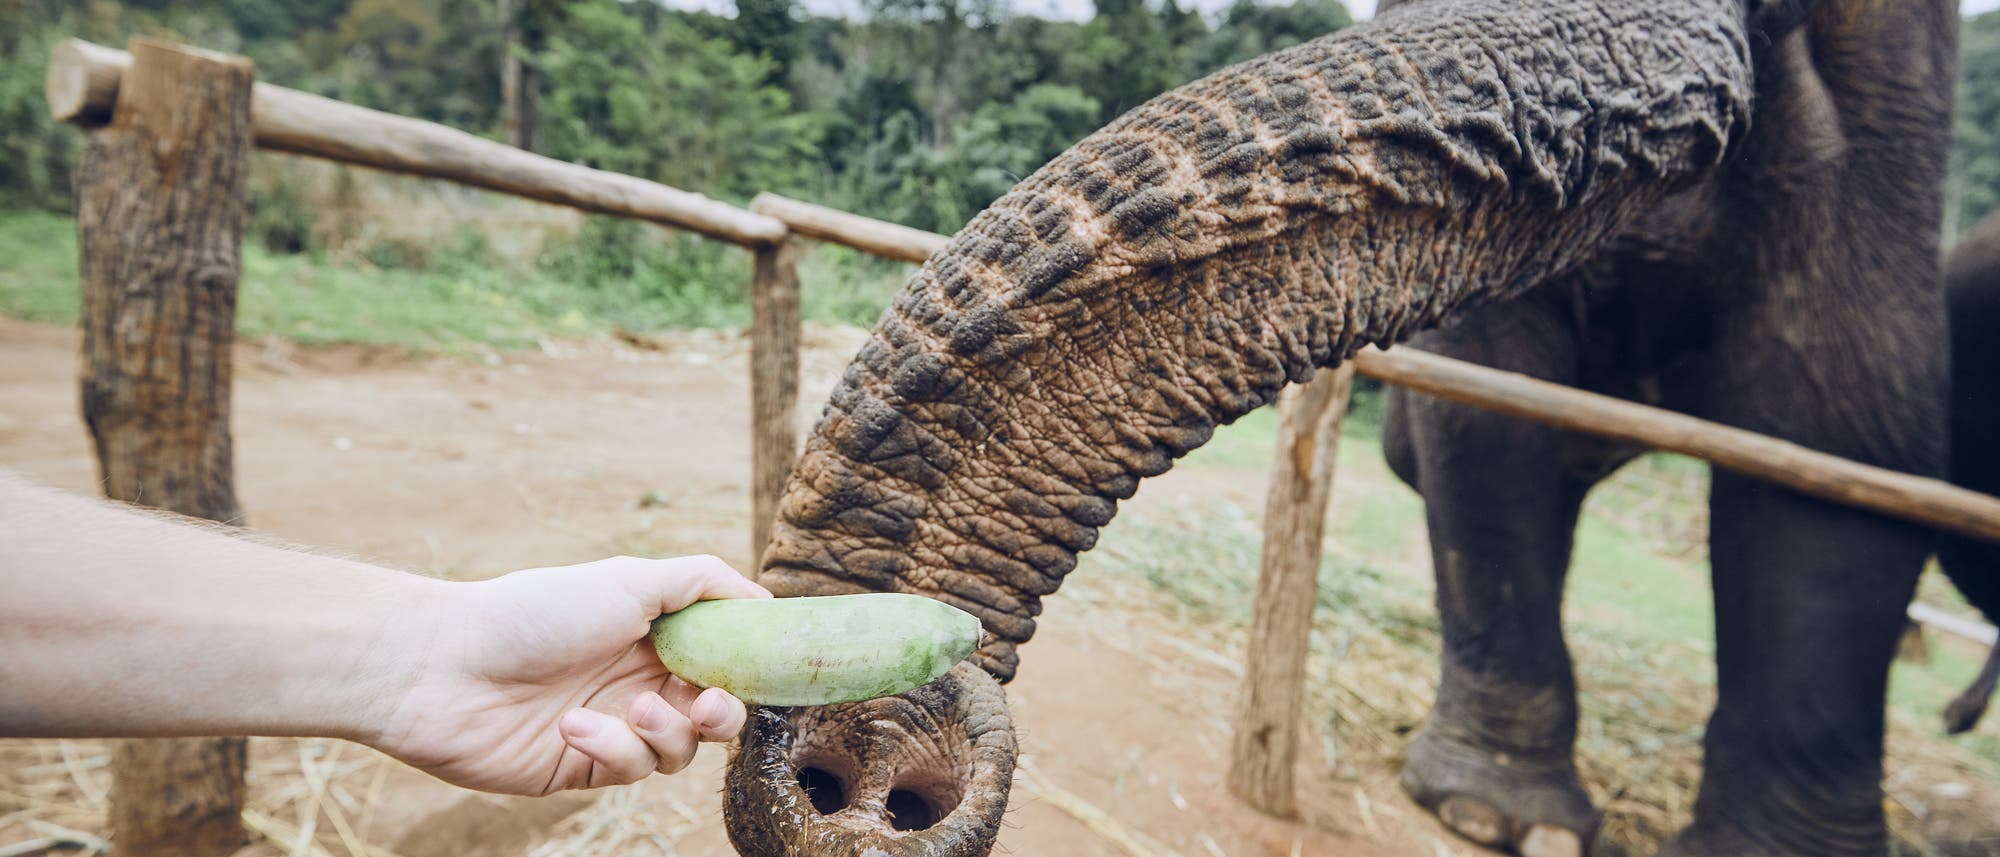 Elefant frisst Banane